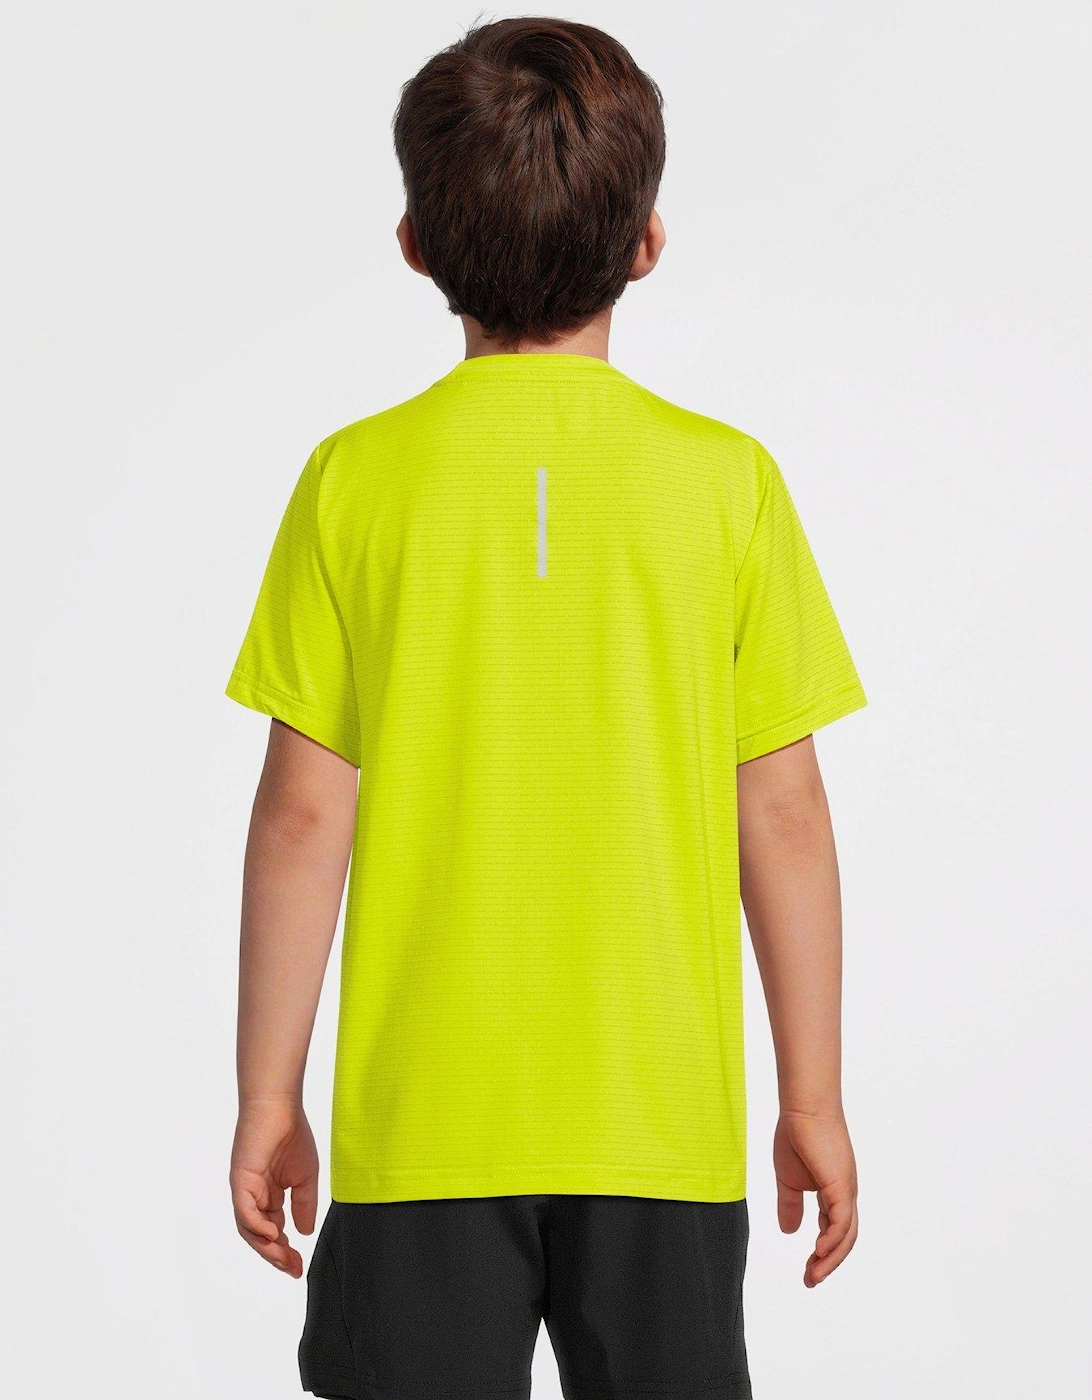 Junior Speed Short Sleeve T-Shirt - Bright Green